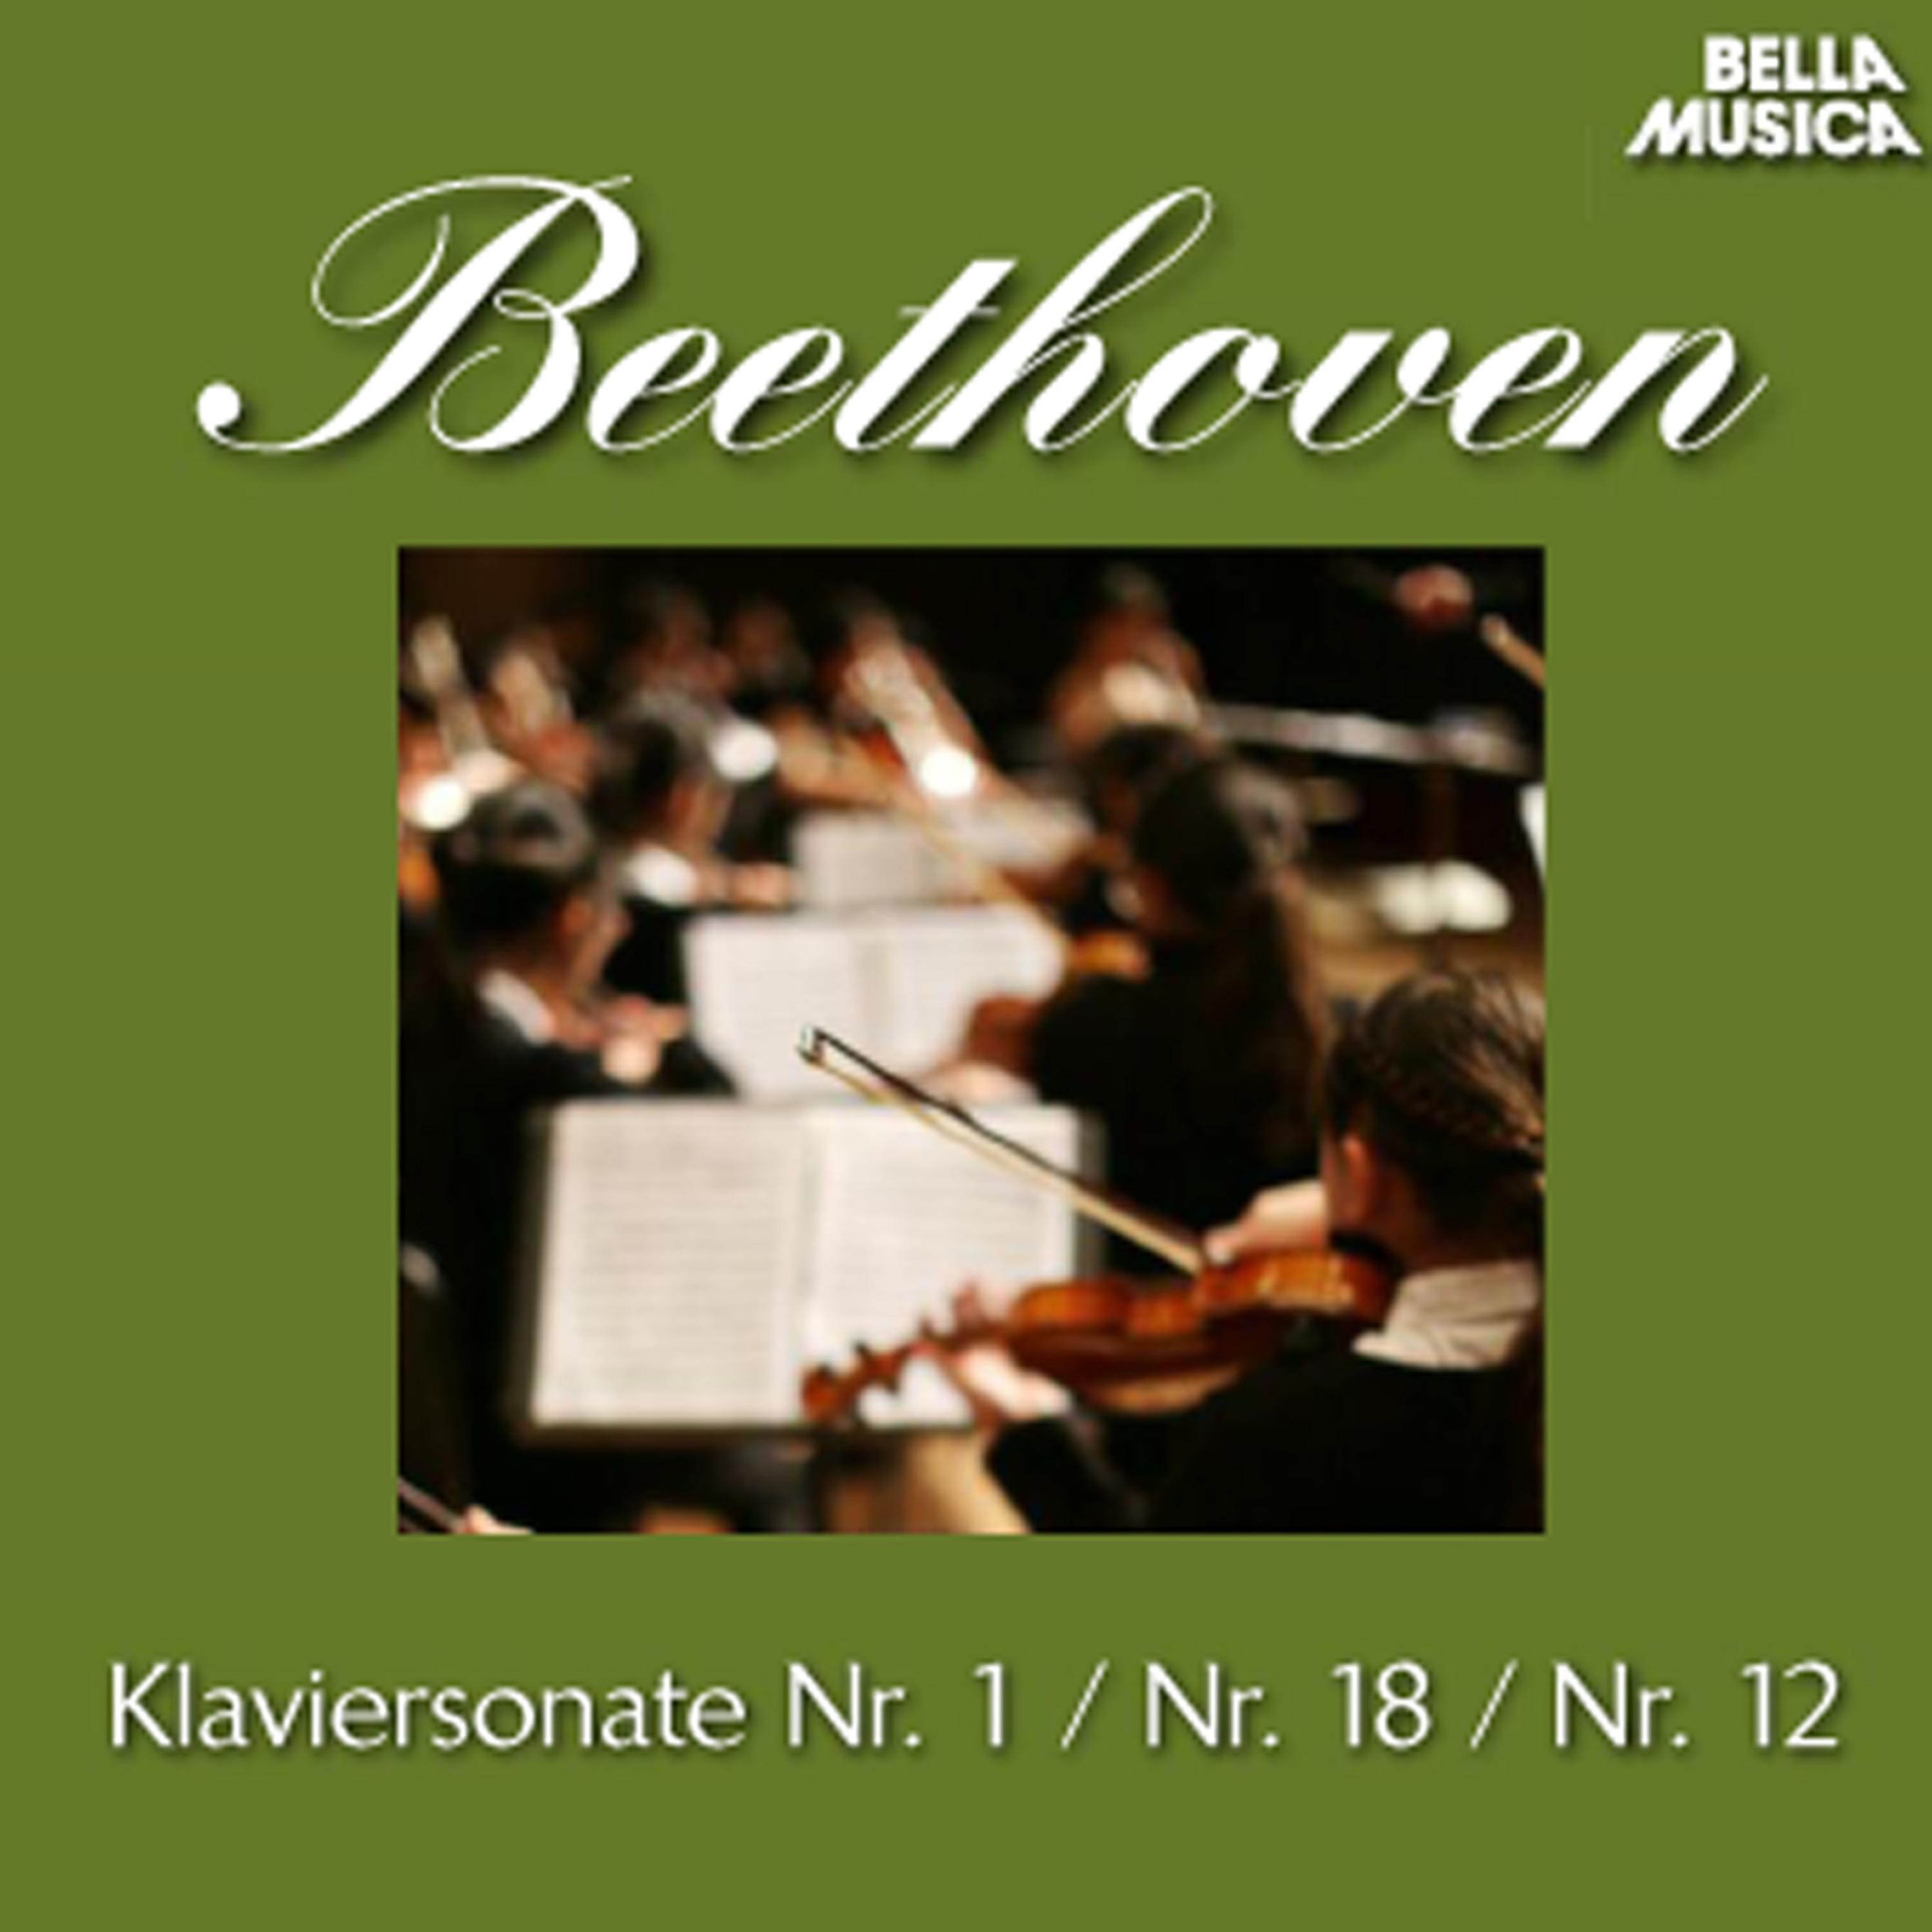 Klaviersonate No. 18 in E-Flat Major, Op. 31, No. 3: II. Scherzo - Allegretto vivace